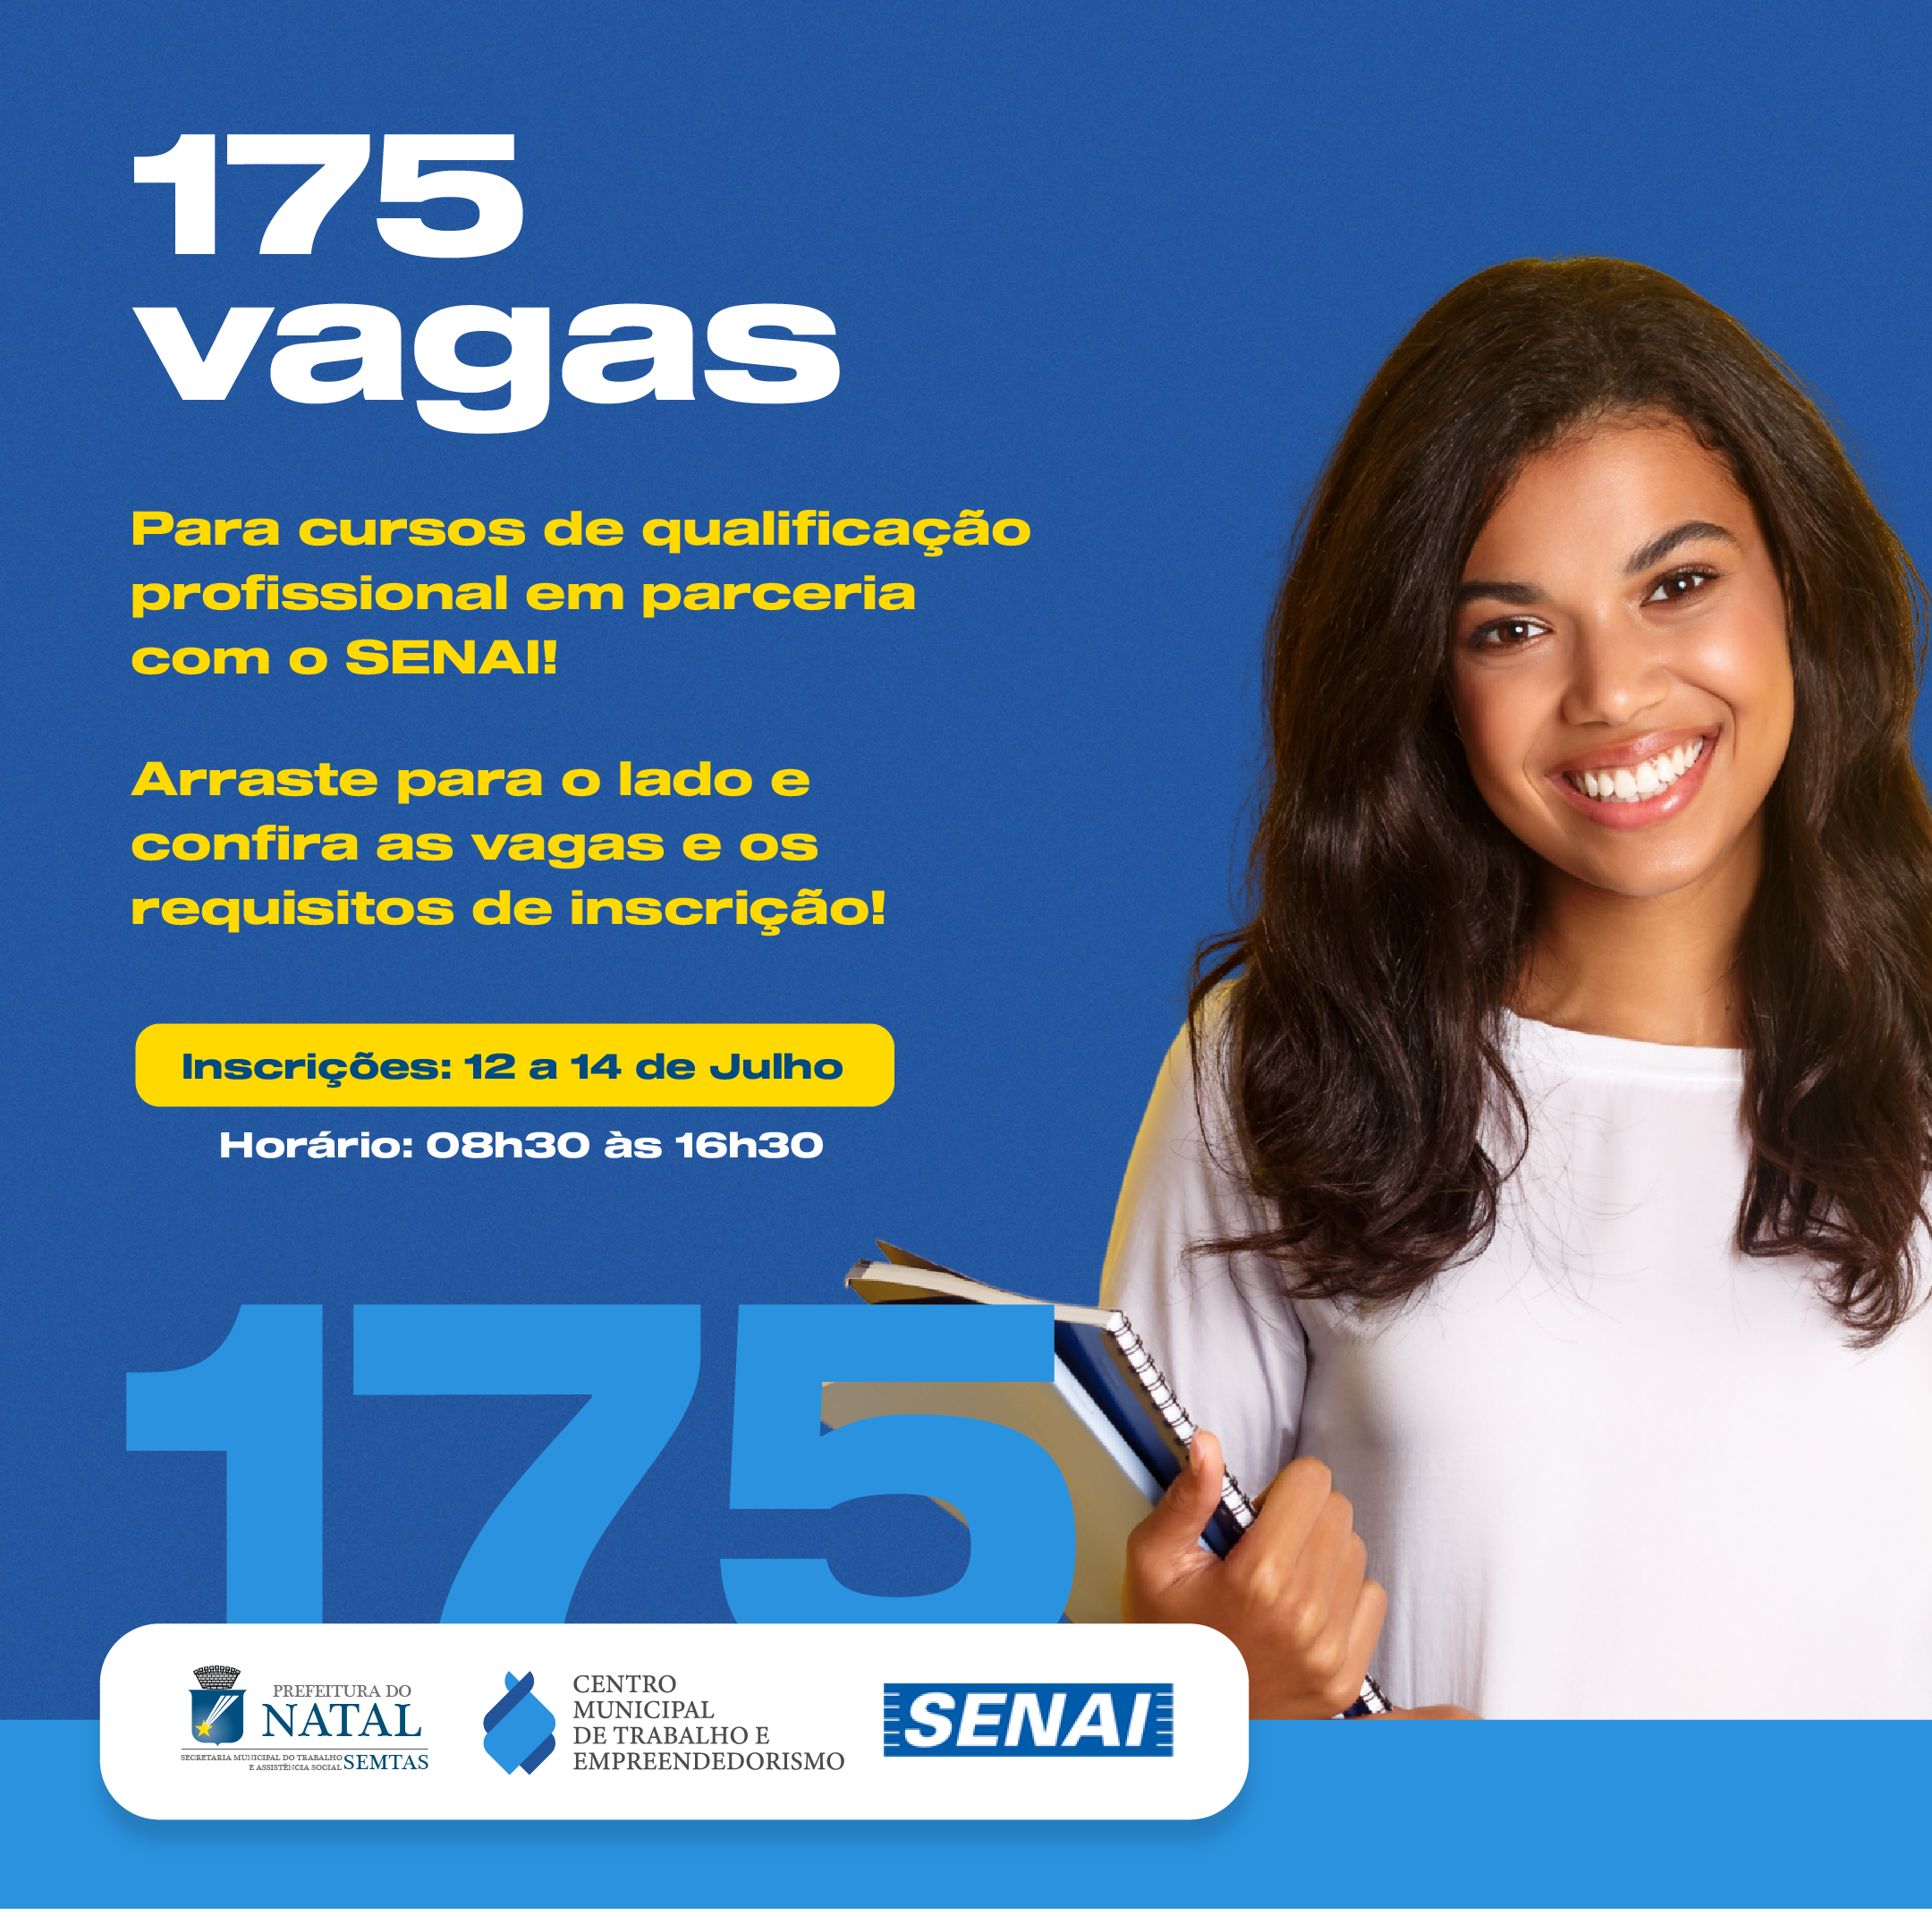 Em parceria com o Senai, Semtas abre 175 vagas em cursos de qualificação profissional